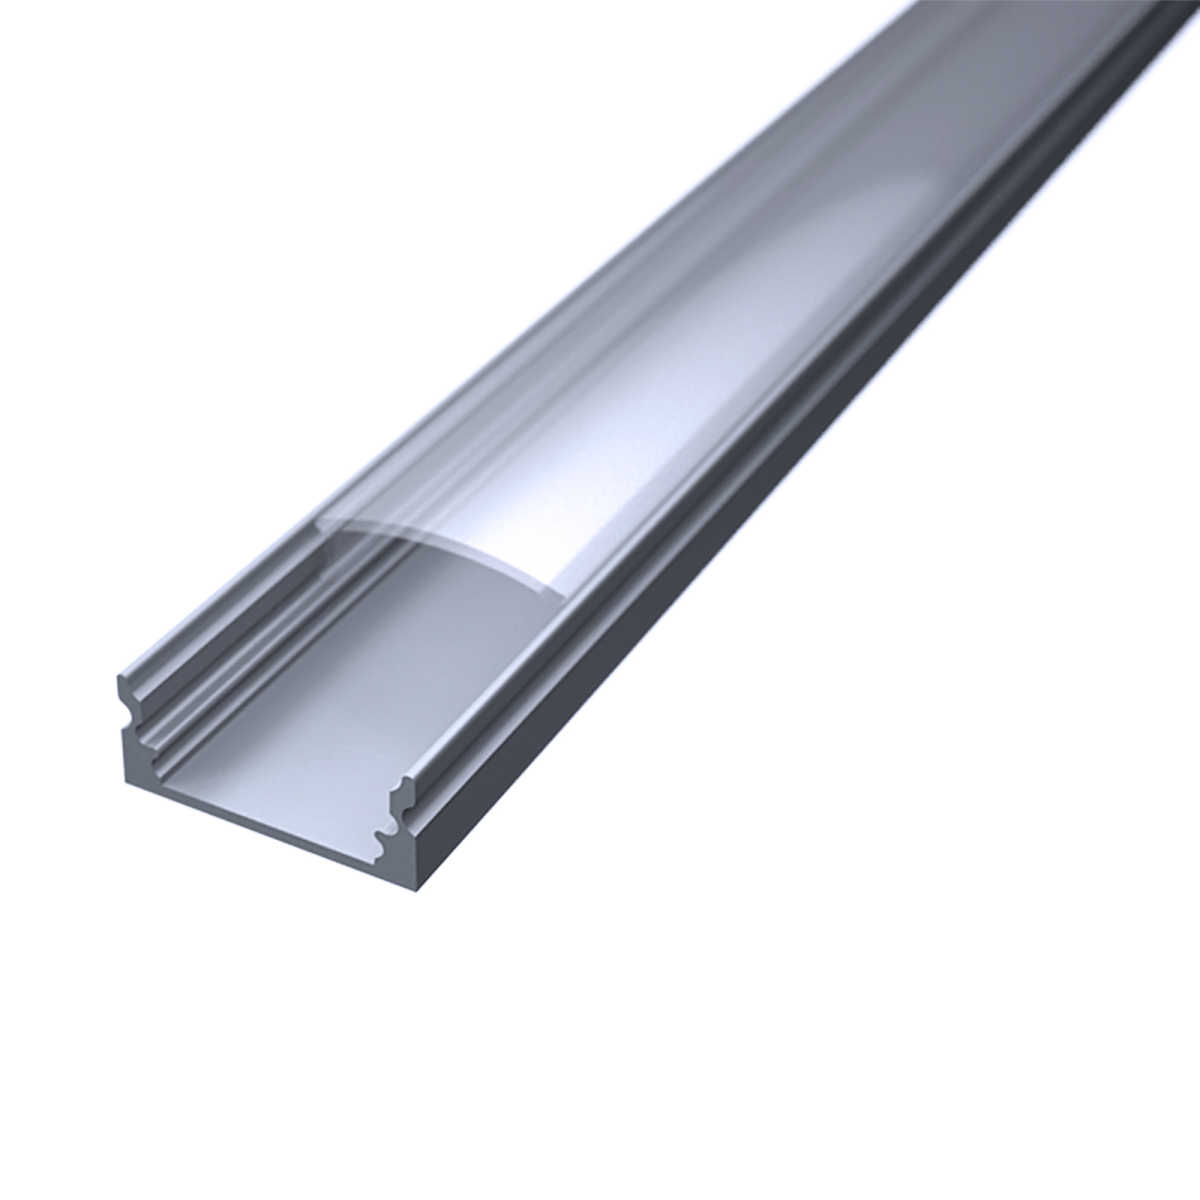 LED Flachprofil "Slim-Line" | Abdeckung transparent | Zuschnitt auf 179cm |